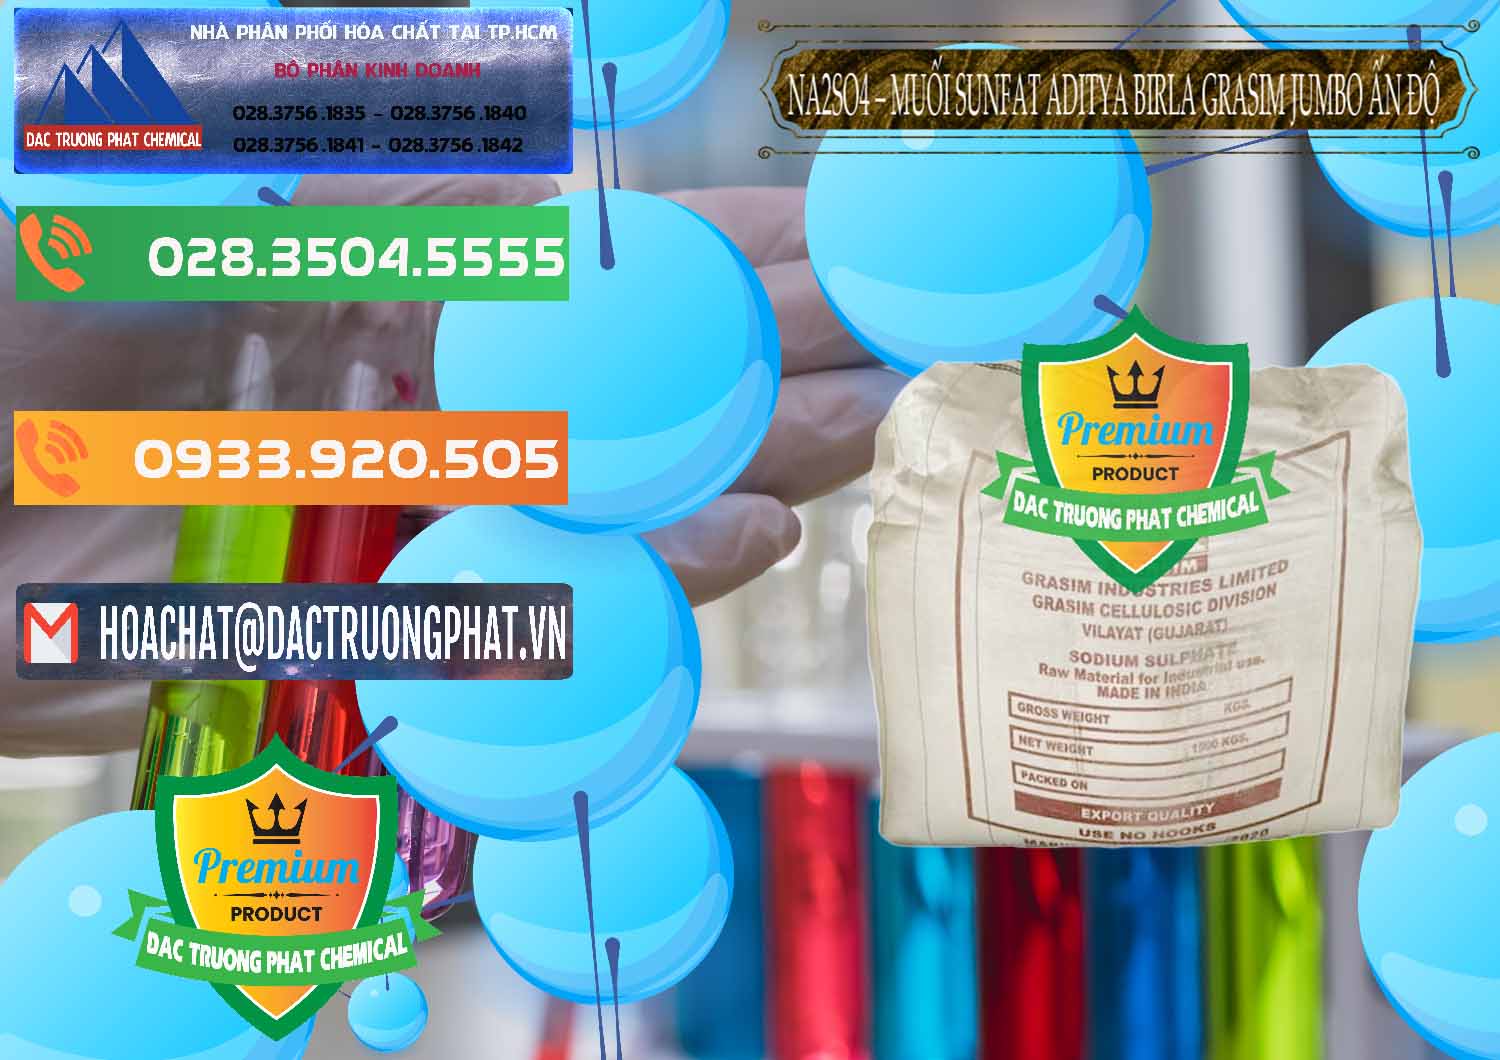 Công ty chuyên kinh doanh và bán Sodium Sulphate - Muối Sunfat Na2SO4 Jumbo Bành Aditya Birla Grasim Ấn Độ India - 0357 - Cty chuyên cung cấp - nhập khẩu hóa chất tại TP.HCM - hoachatxulynuoc.com.vn